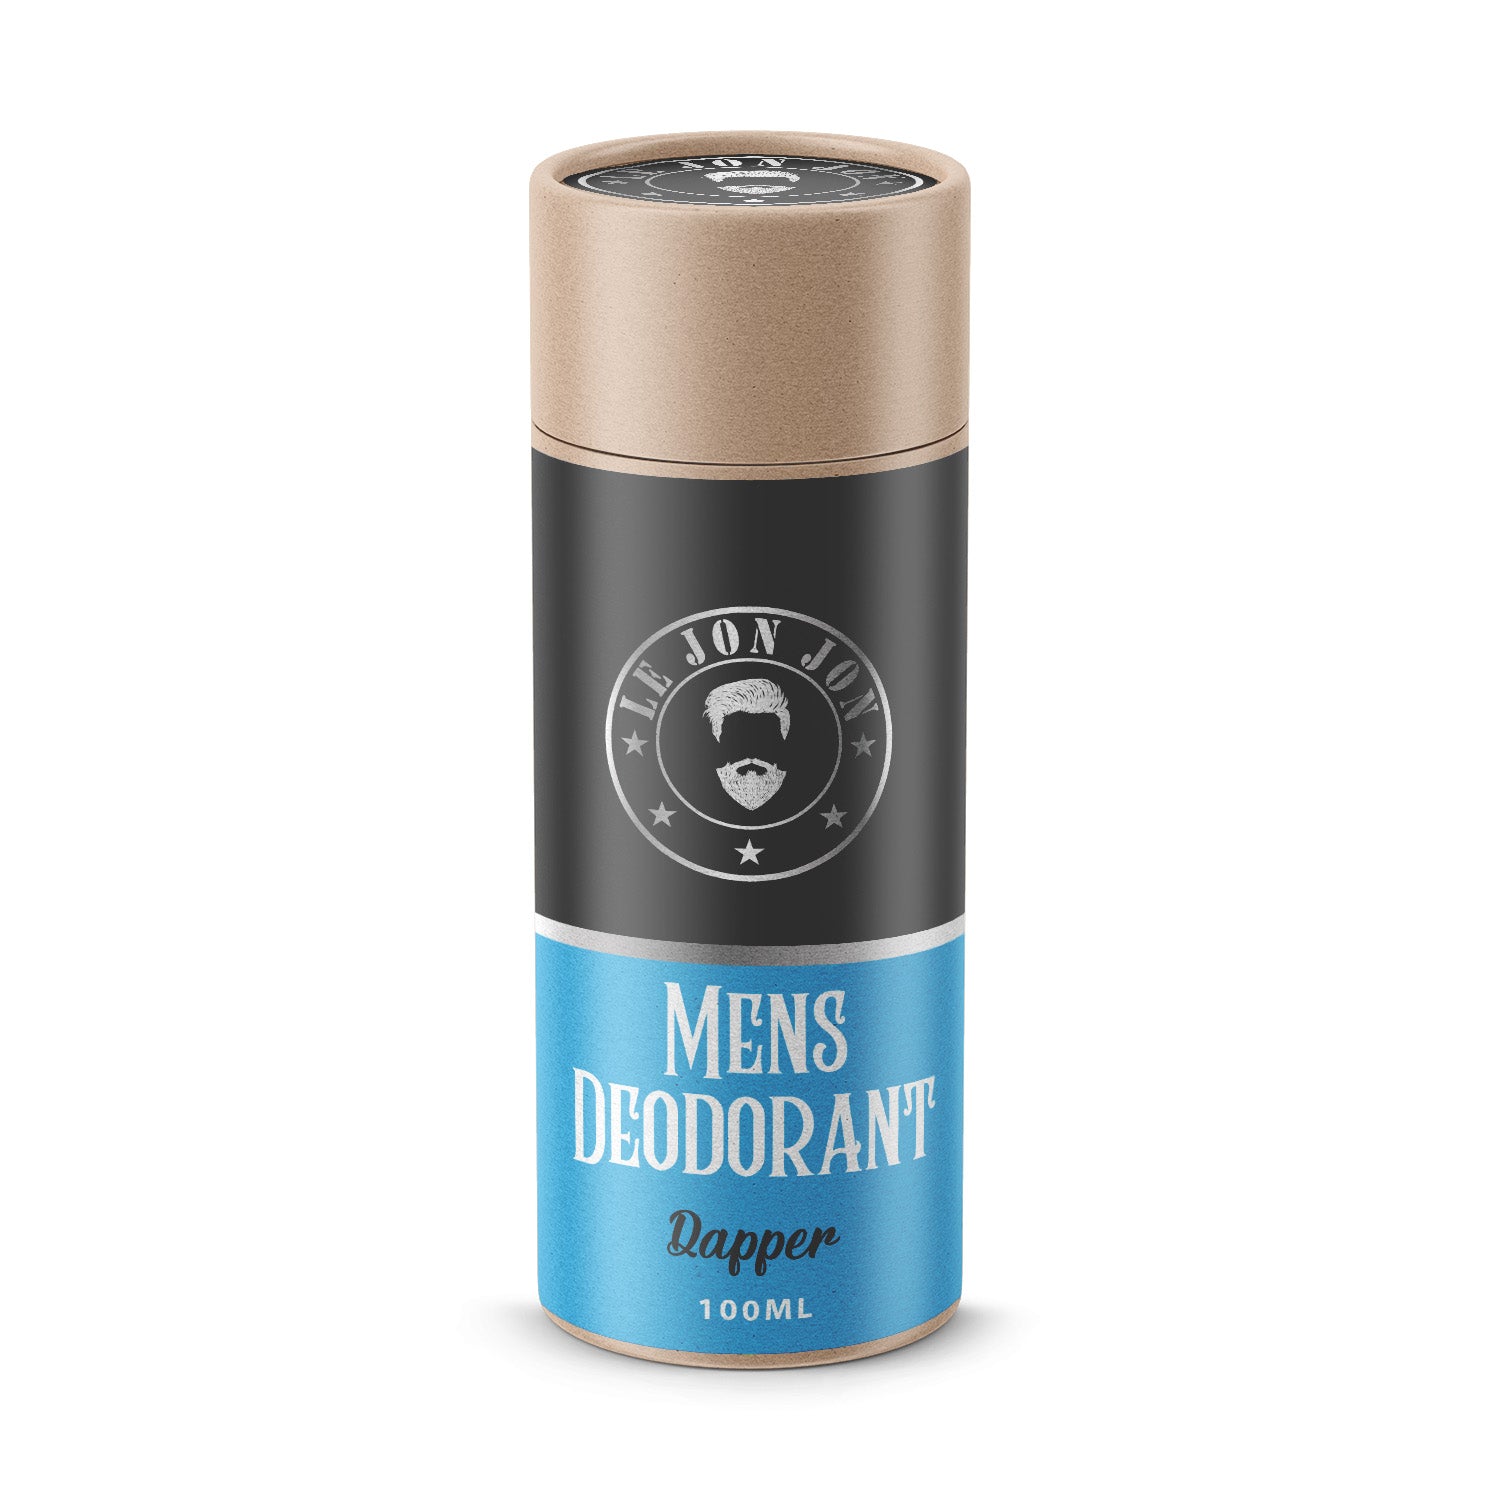 Dapper scented deodorant